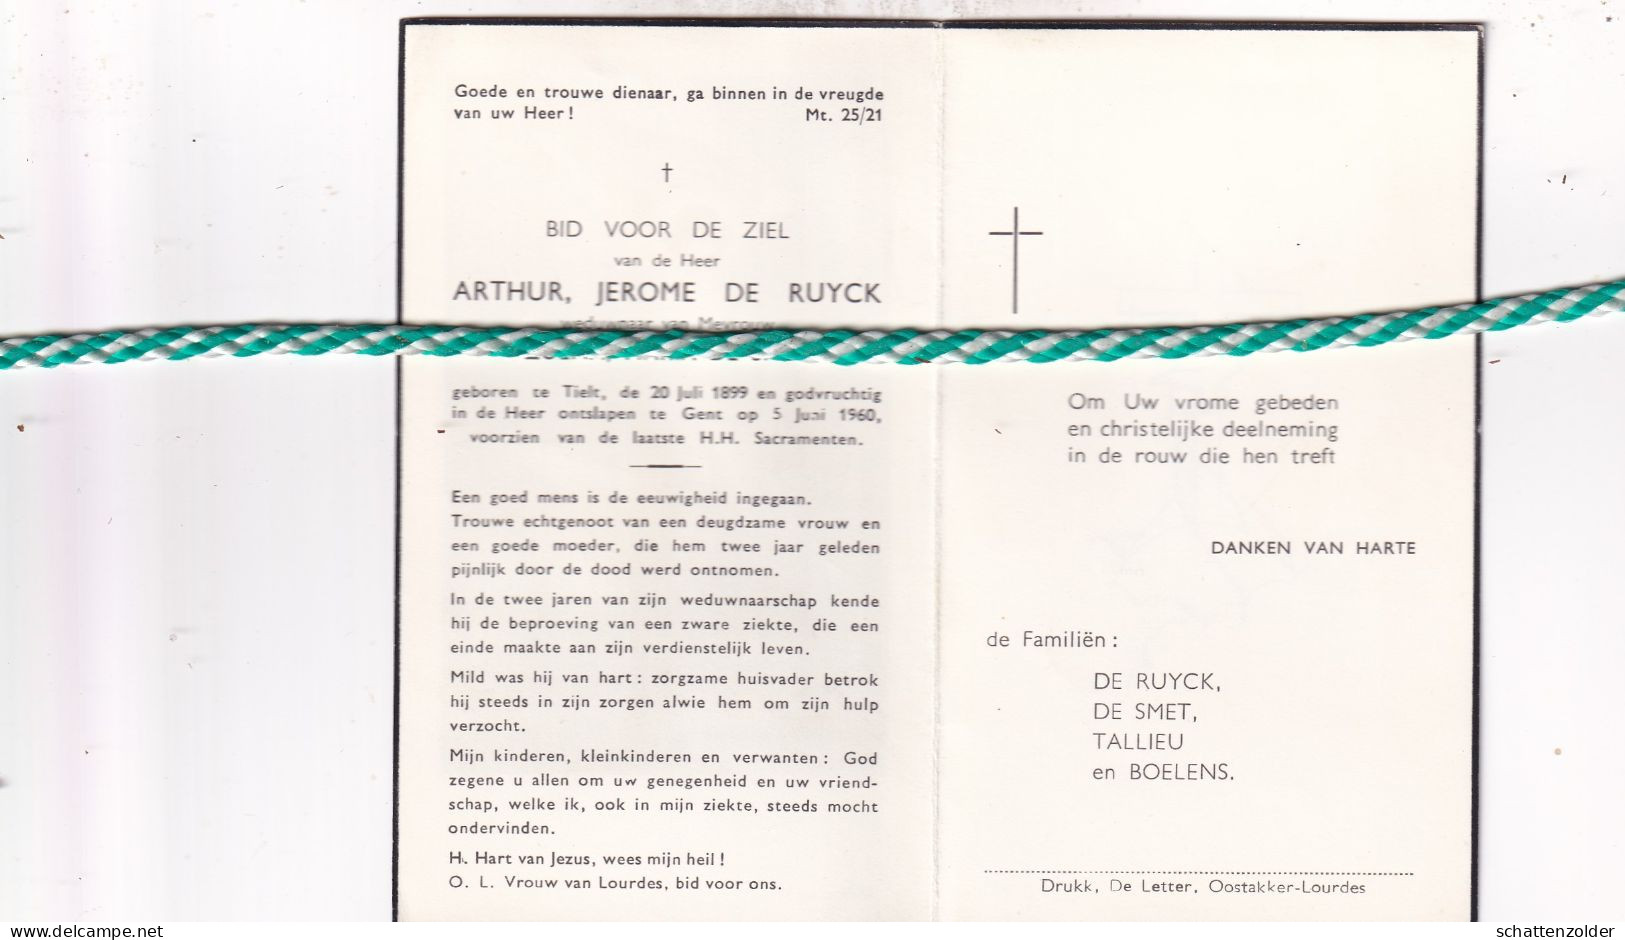 Arthur Jerome De Ruyck-De Smet, Tielt 1899, Gent 1960 - Obituary Notices